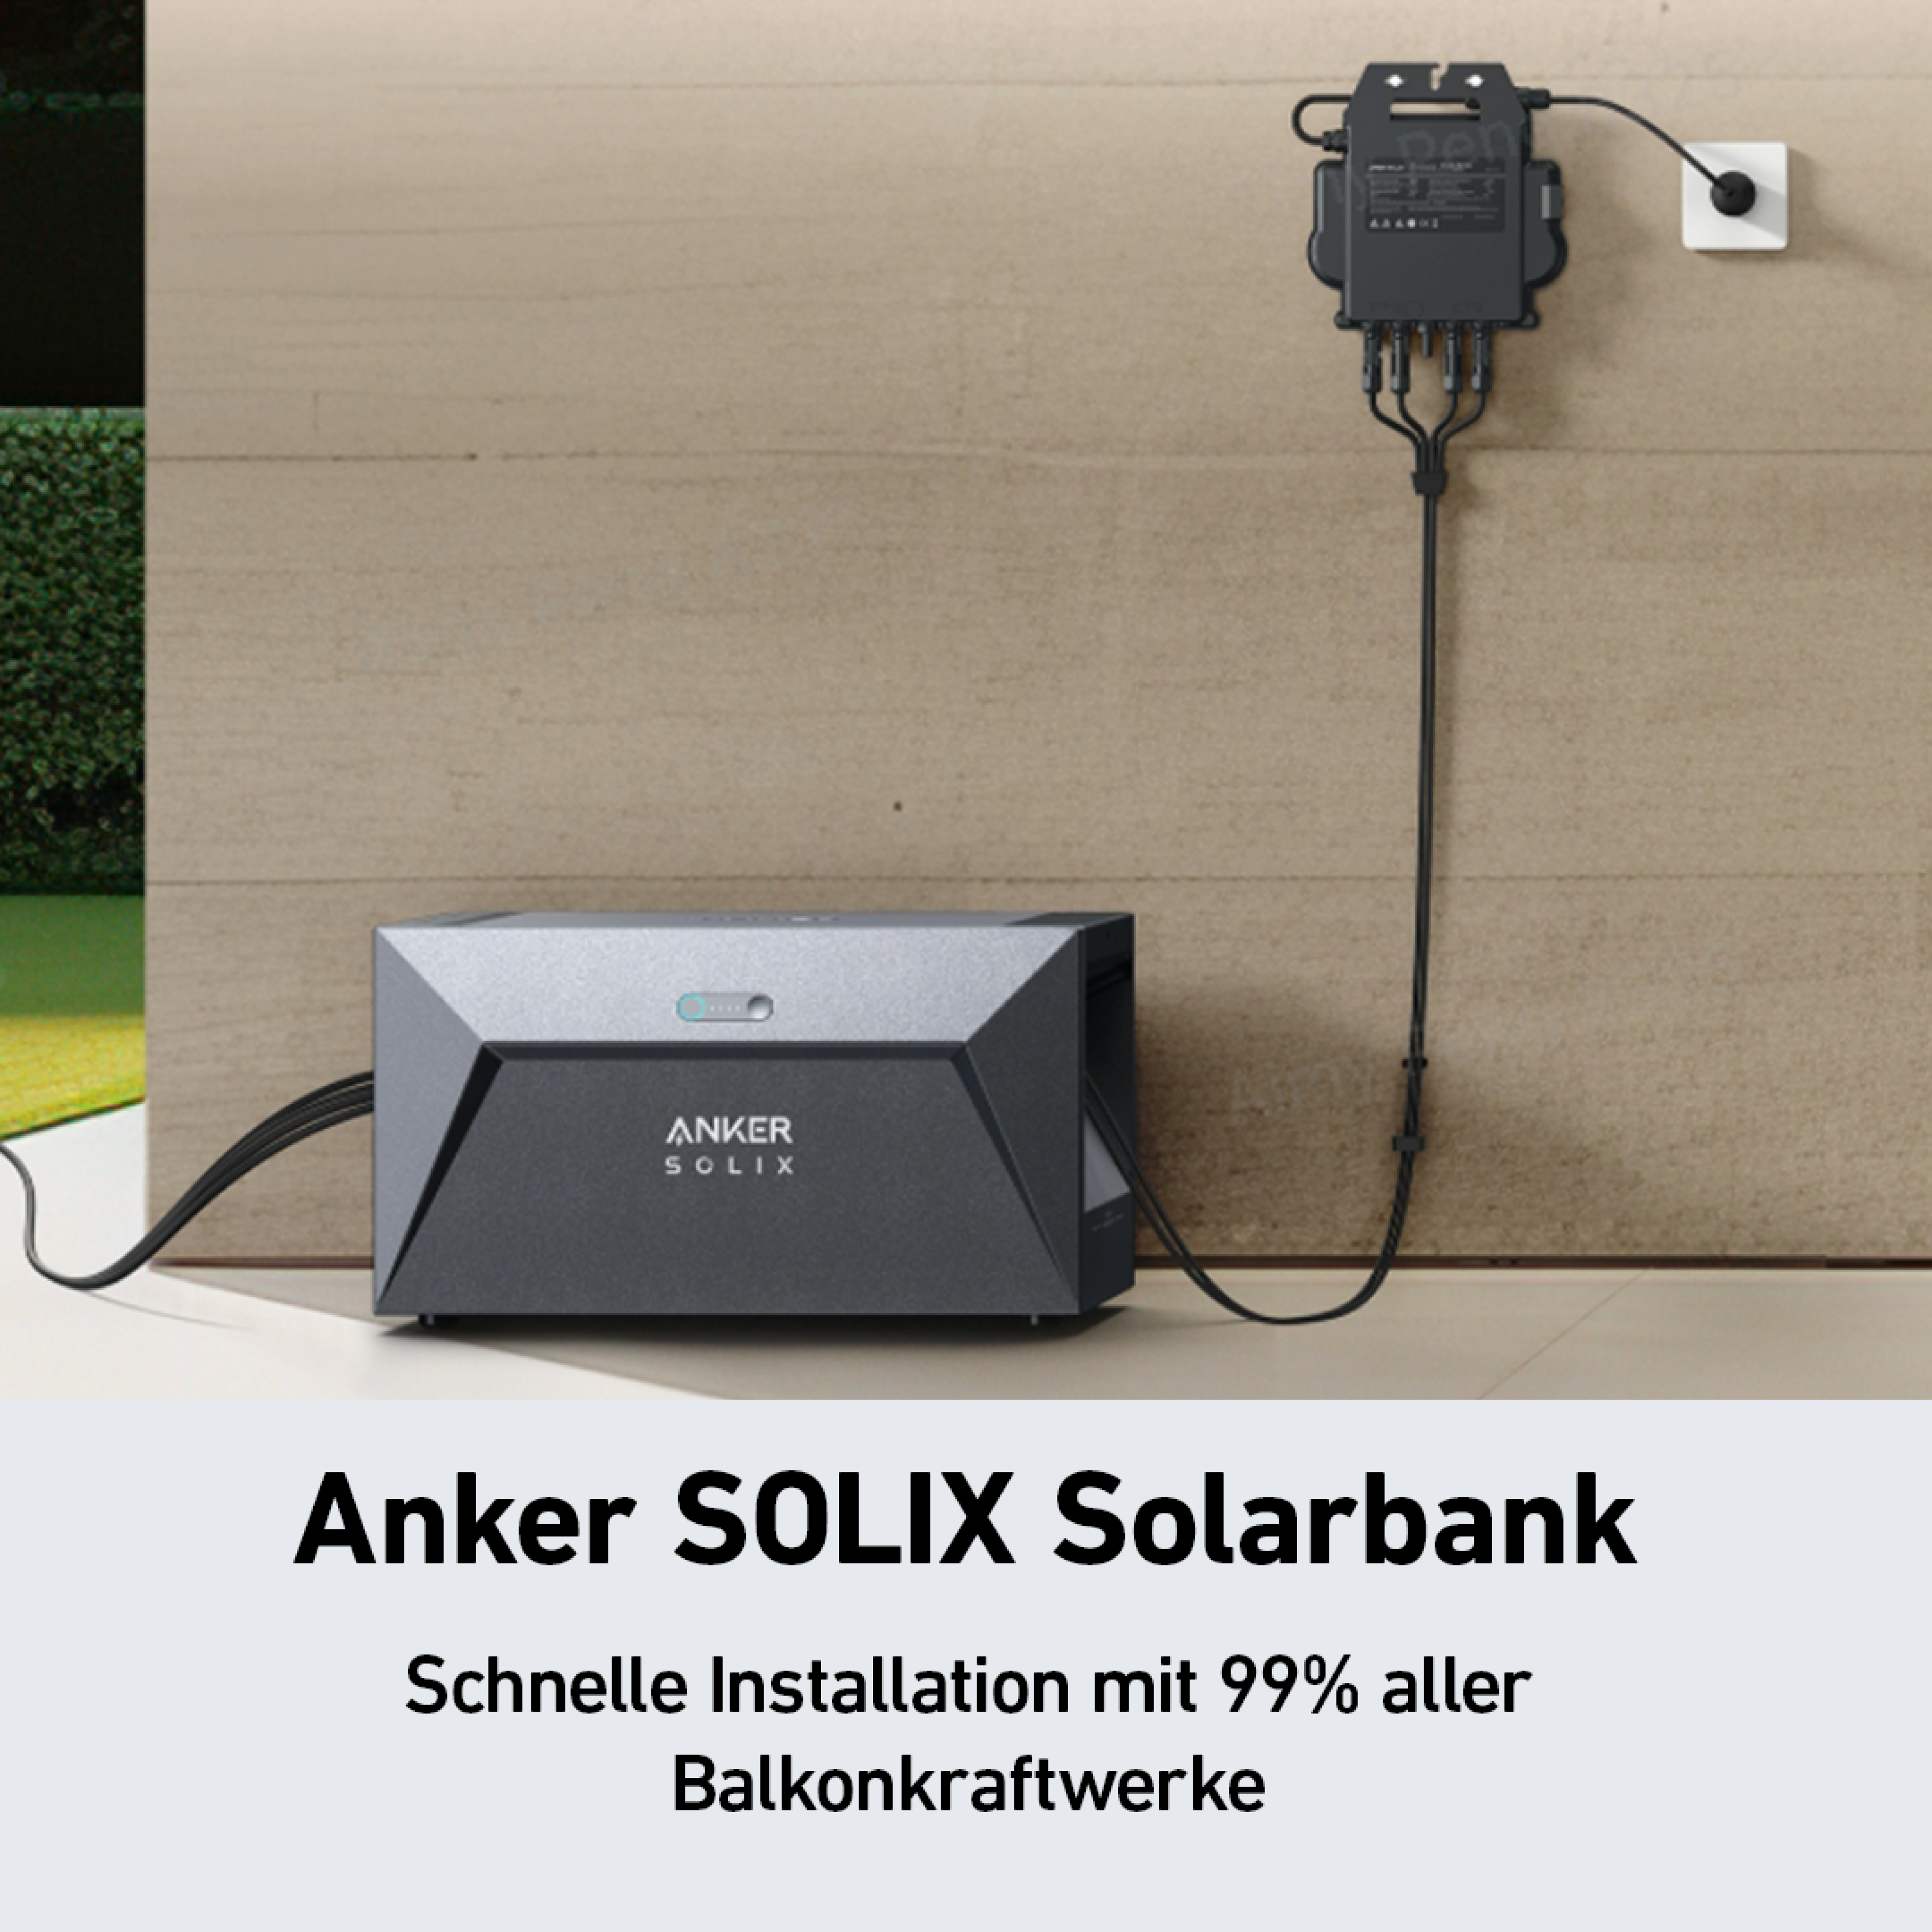 Anker SOLIX Solarbank E1600+17Y0 Speicher für Balkonkraftwerke